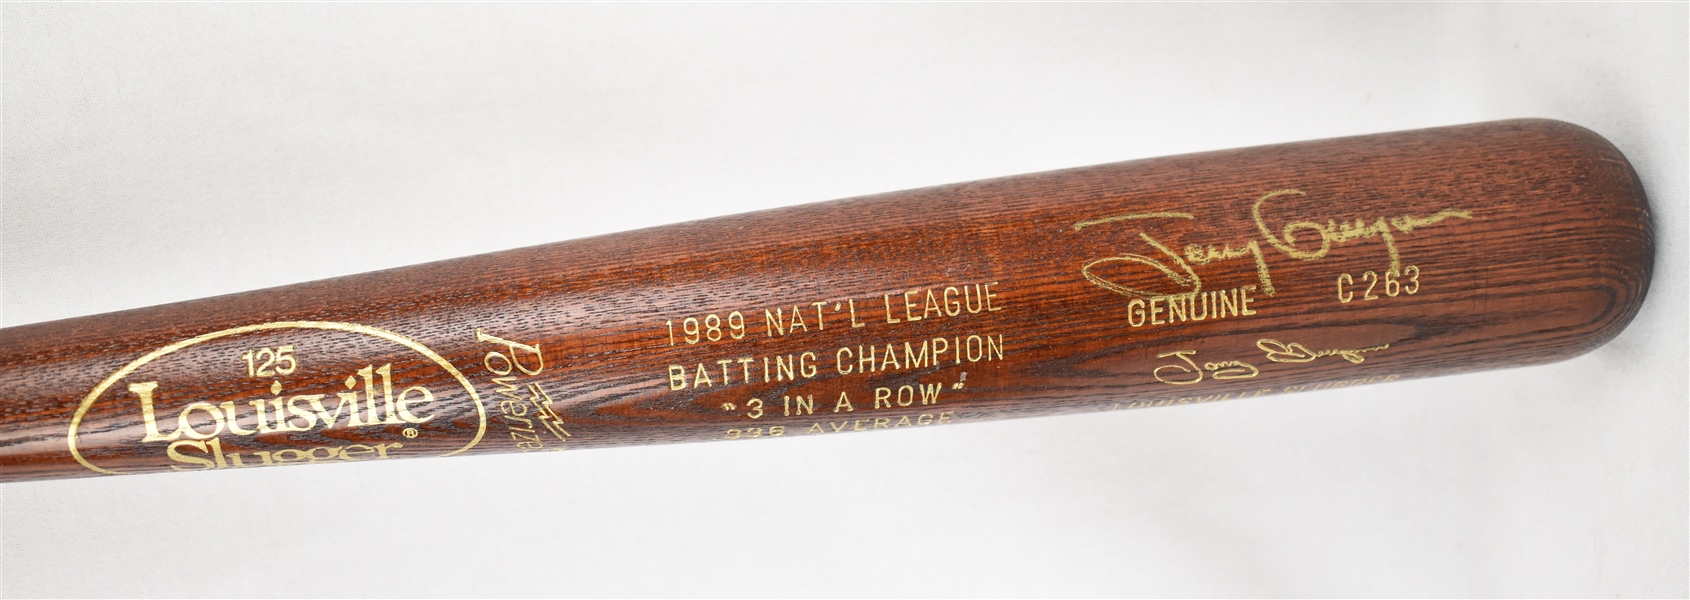 Tony Gwynn Autographed Limited Edition 1989 Batting Champion Bat